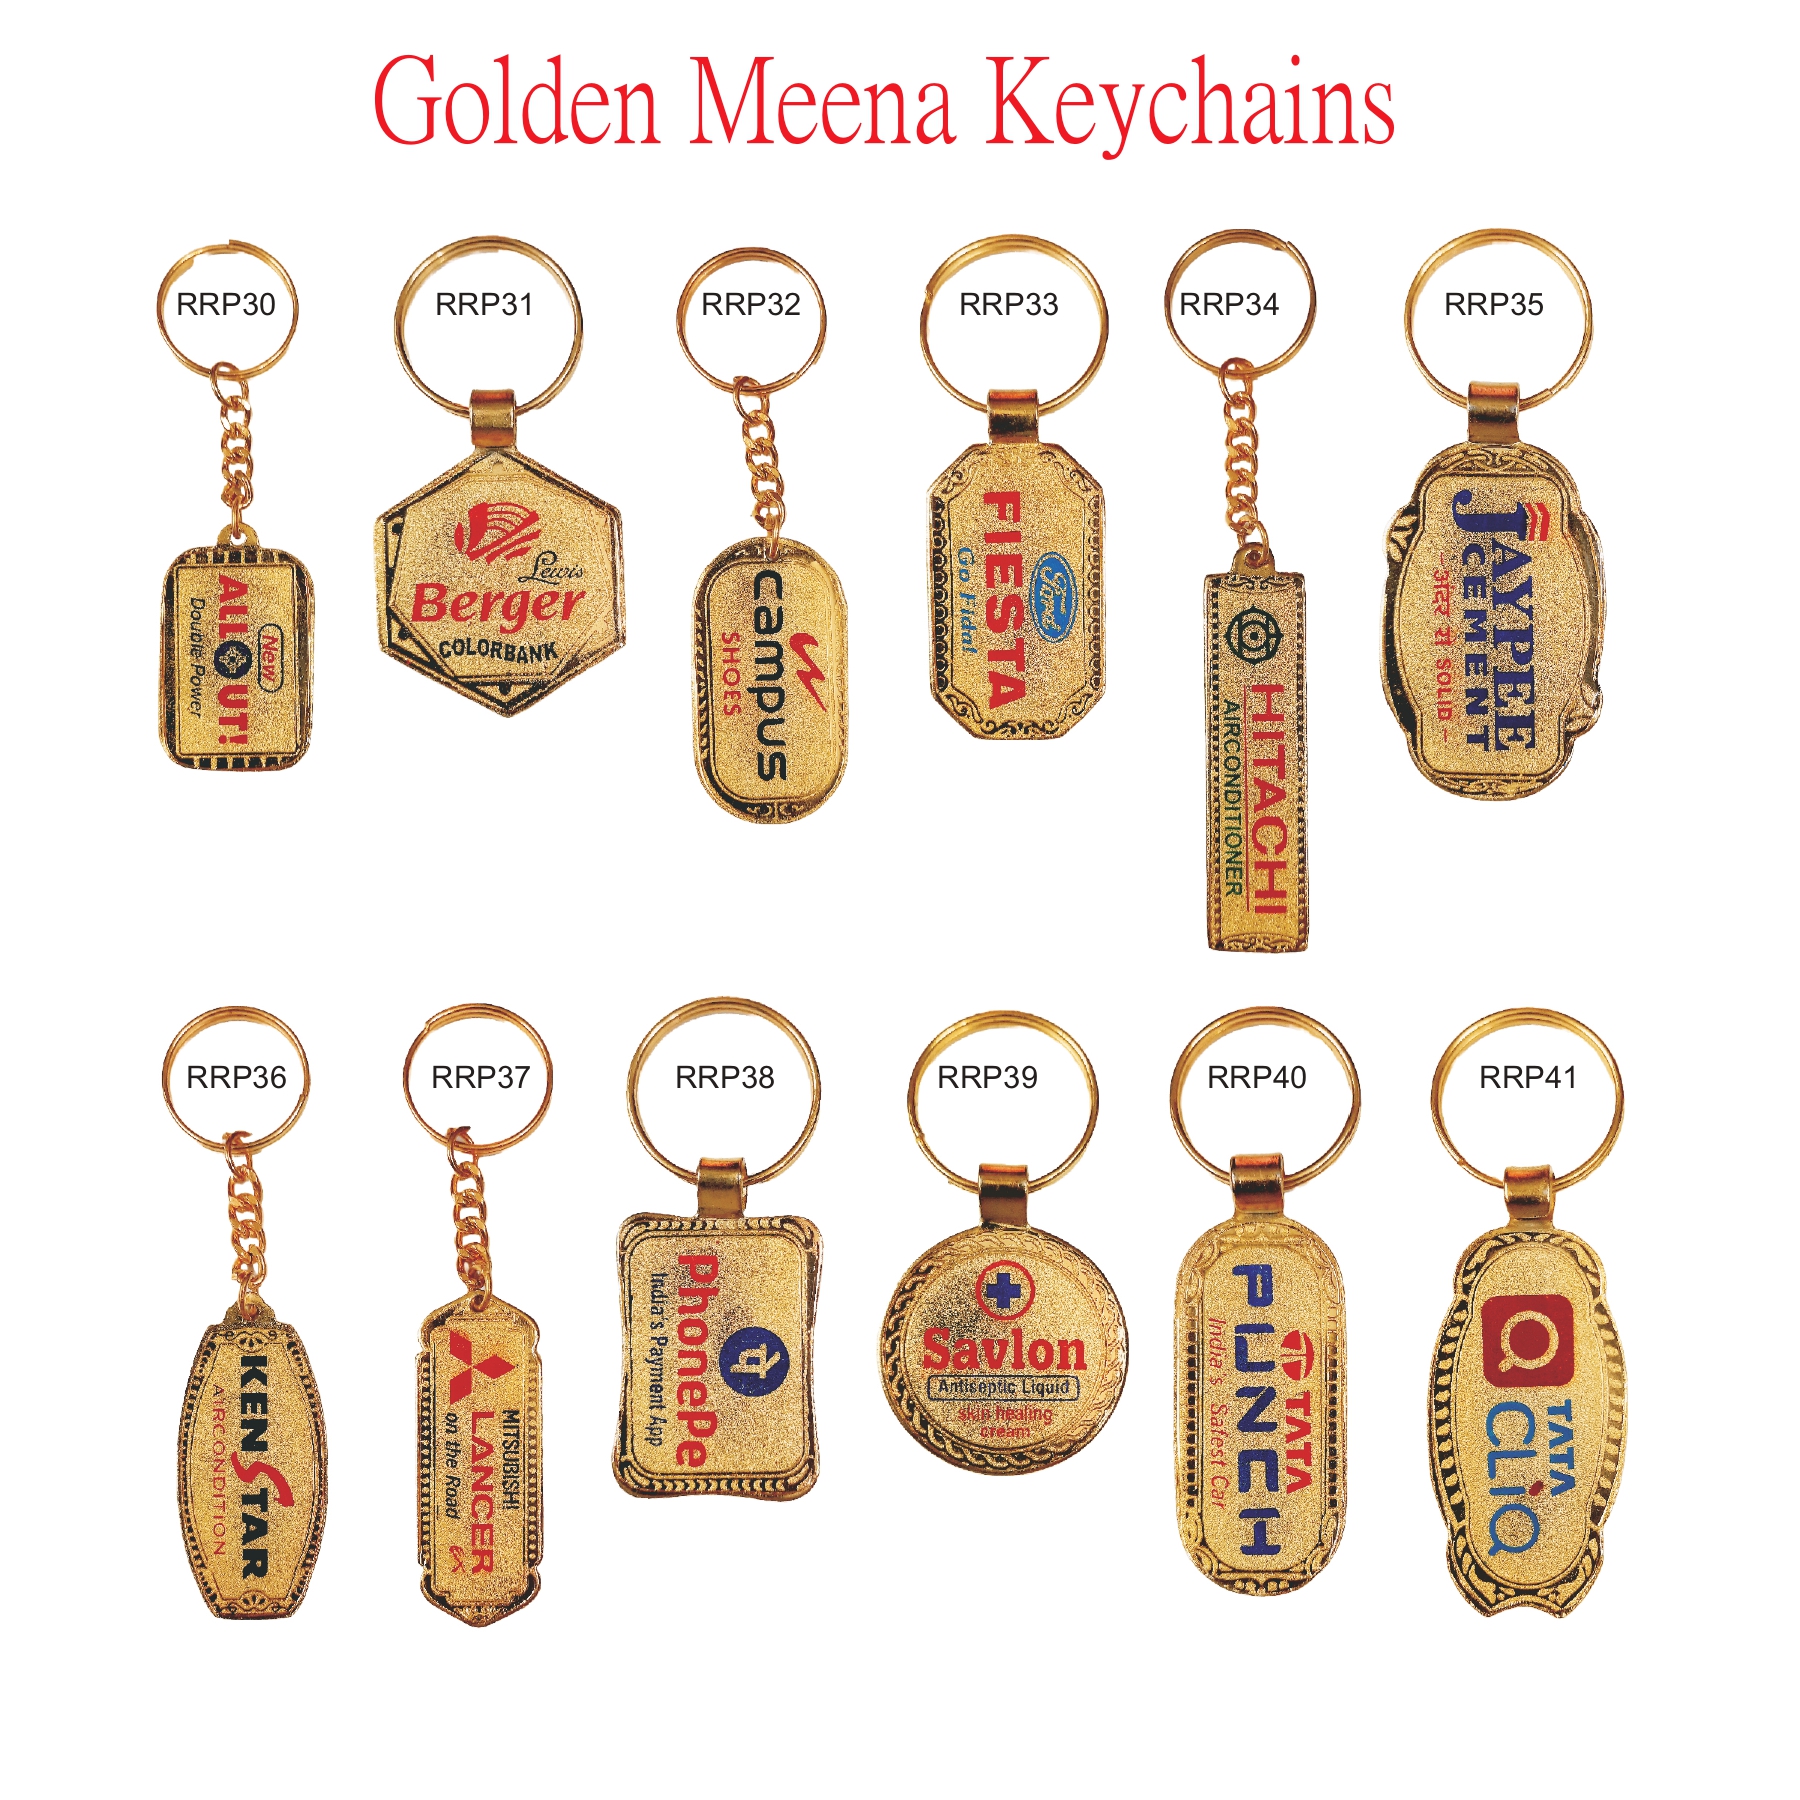 Golden Meens Keychain